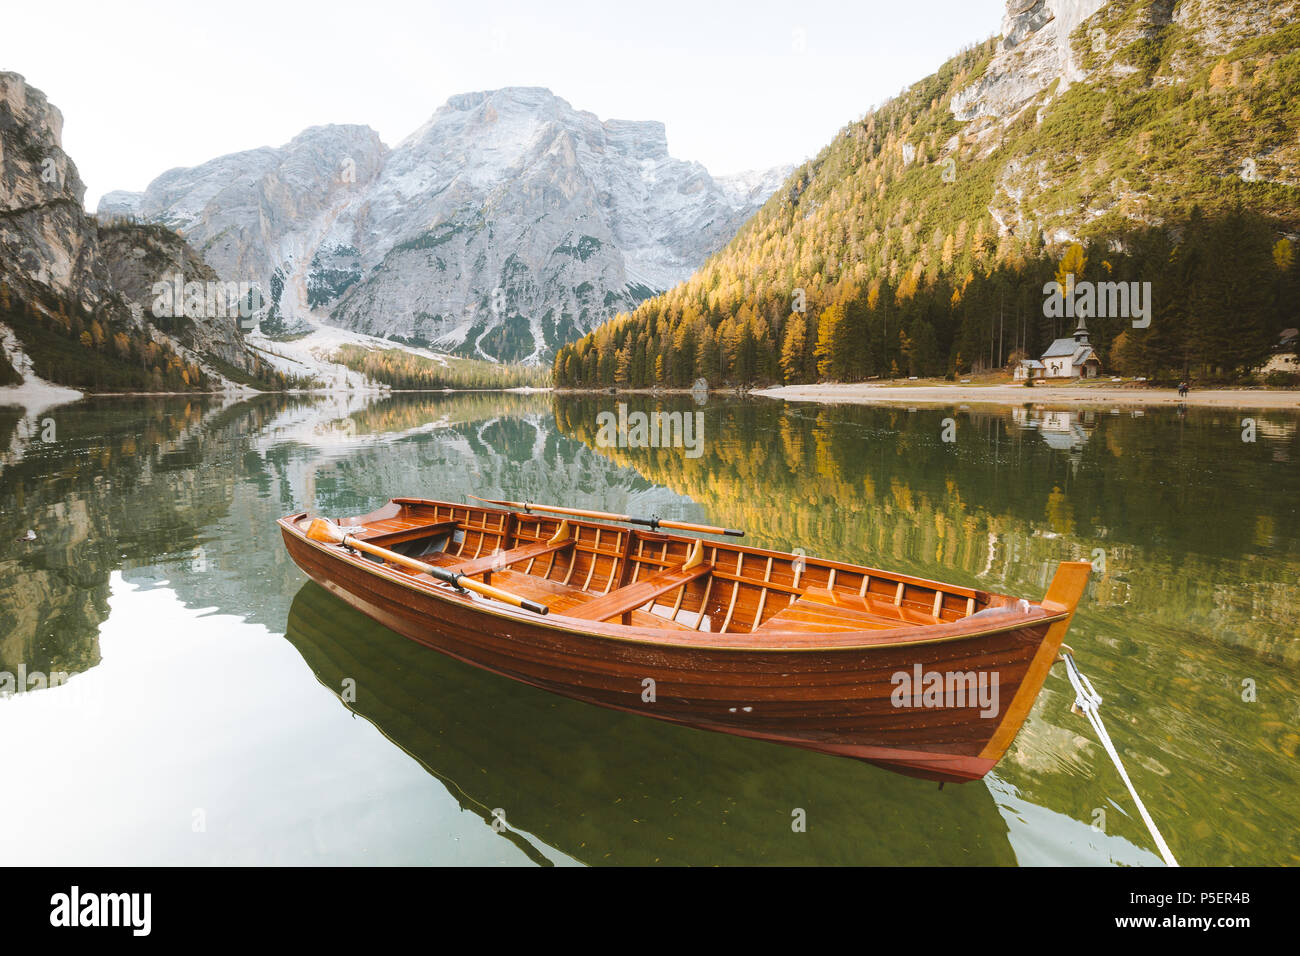 Wunderschöne Aussicht auf traditionellen hölzernen Ruderboot am malerischen Lago di Braies in den Dolomiten im malerischen Morgen bei Sonnenaufgang, Südtirol, Italien Stockfoto